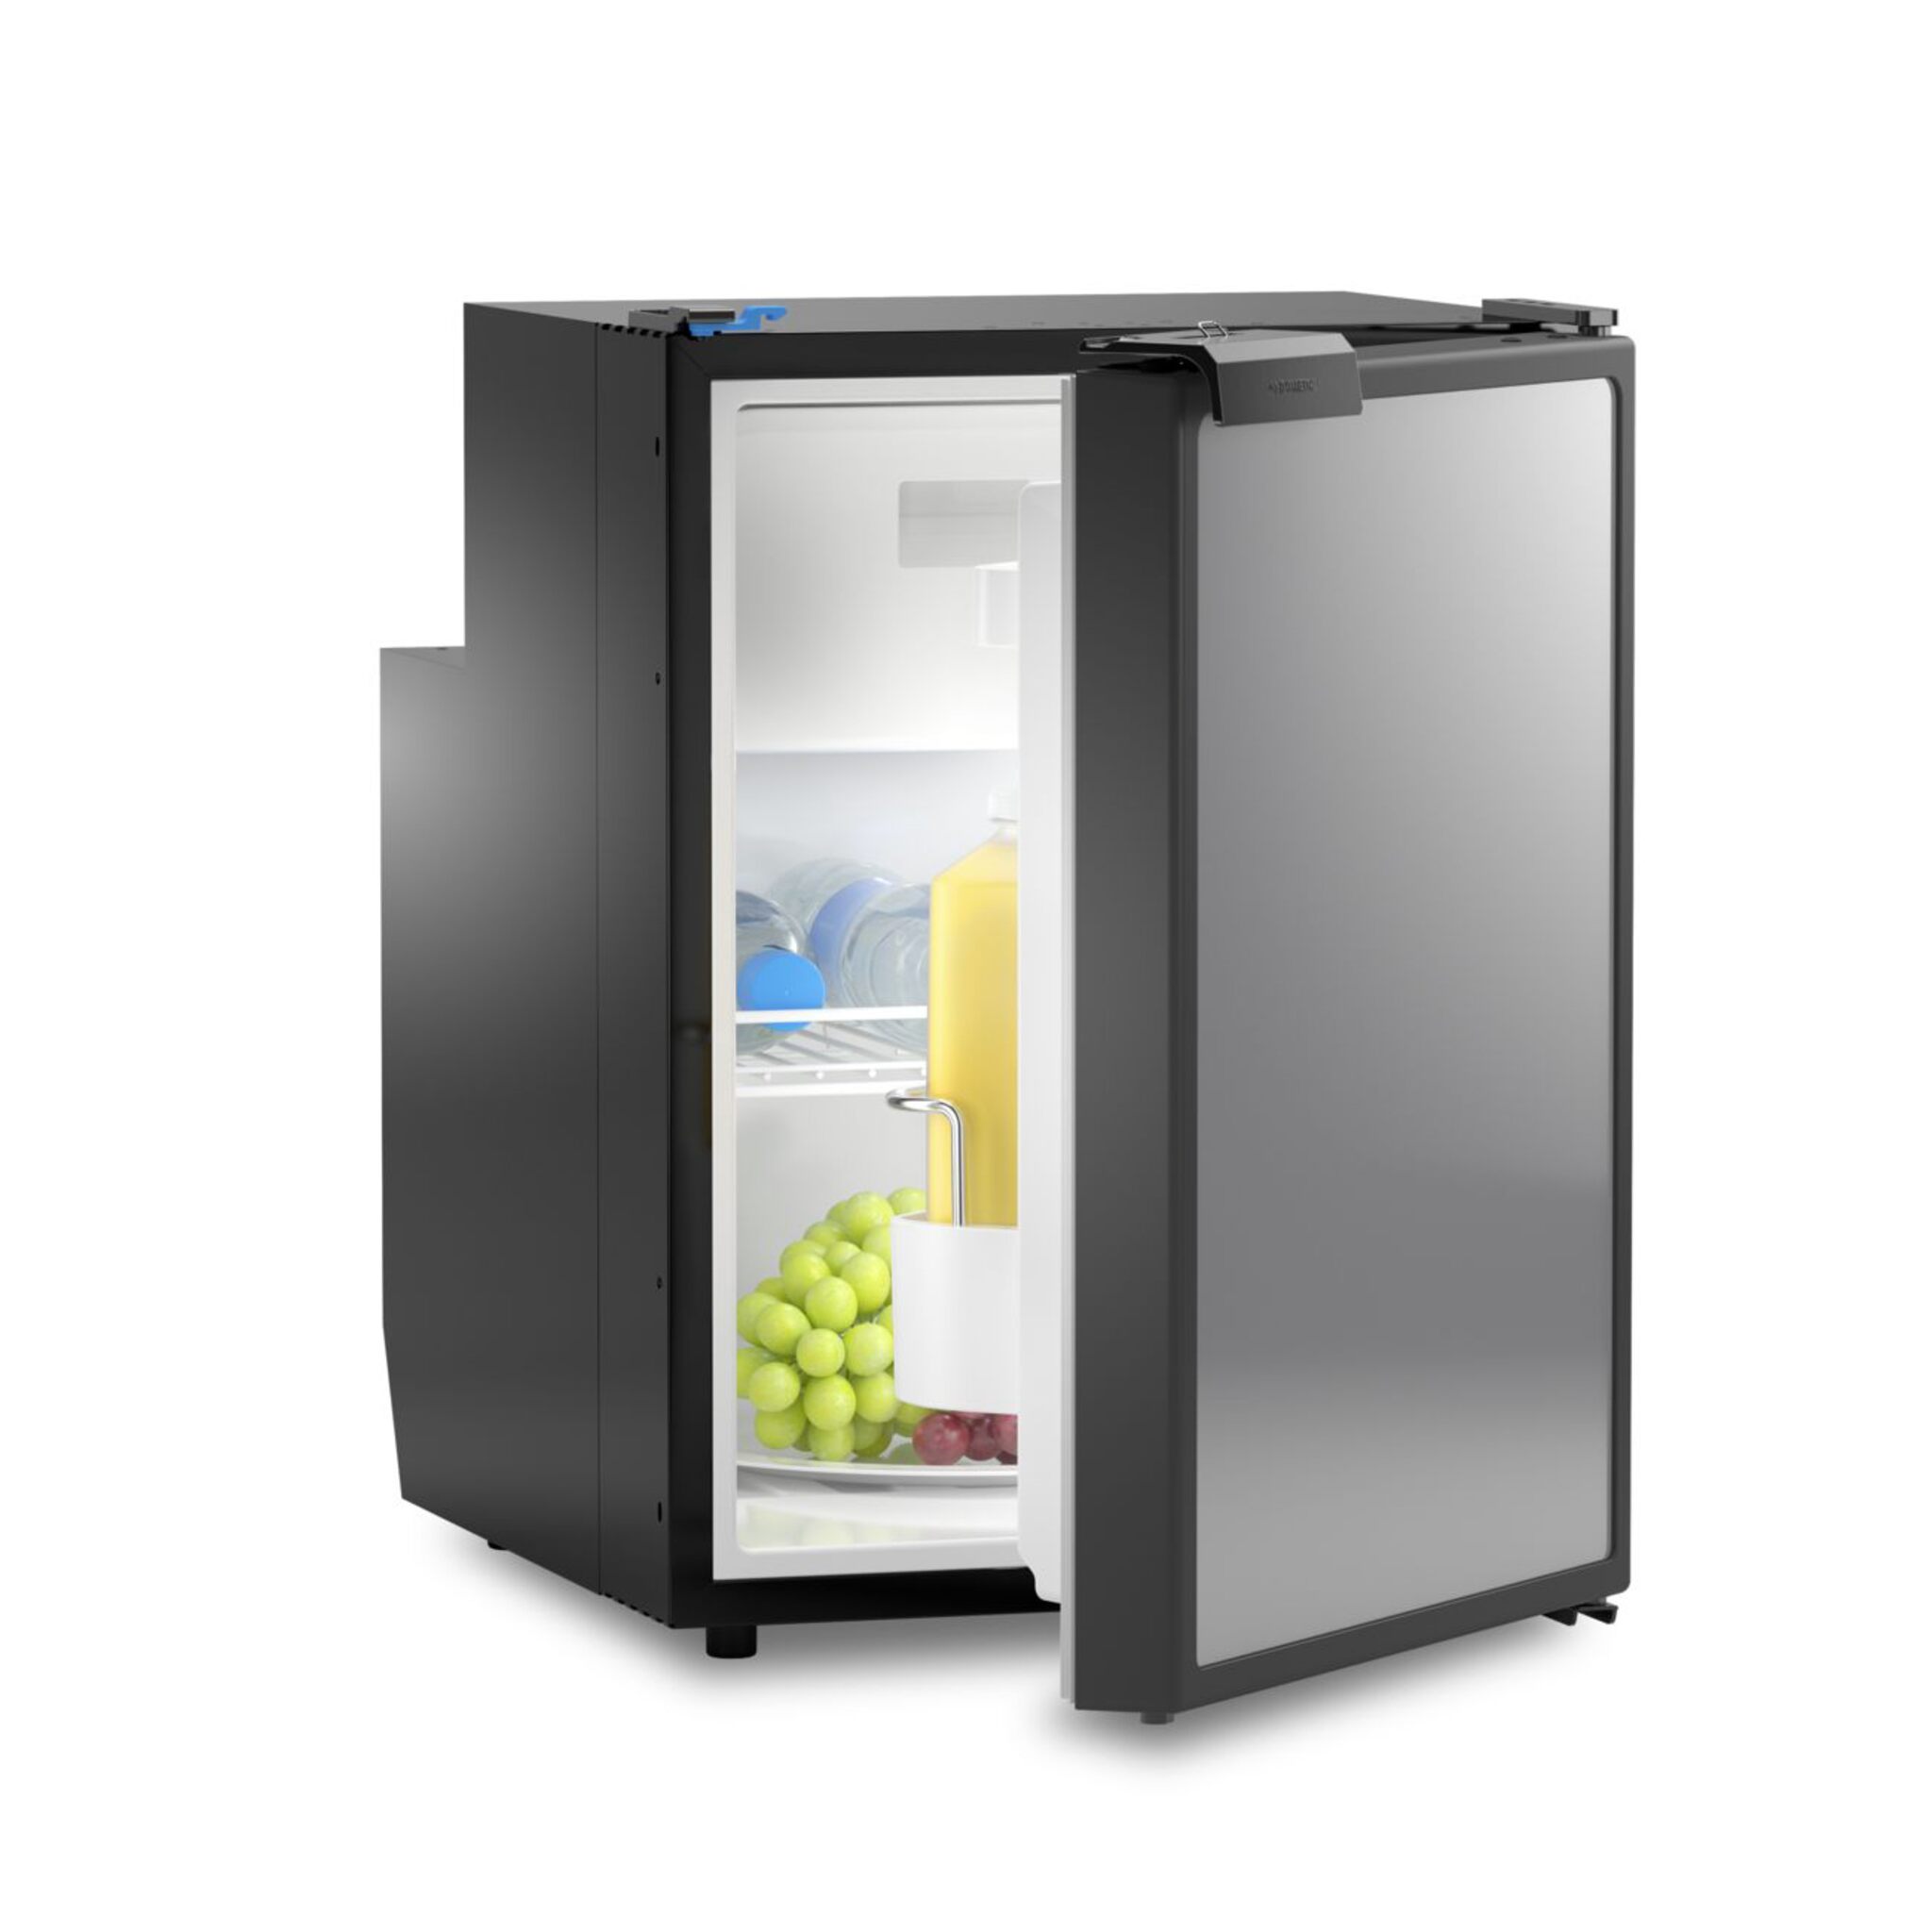 Dometic Coolmatic CRE compressor refrigerators